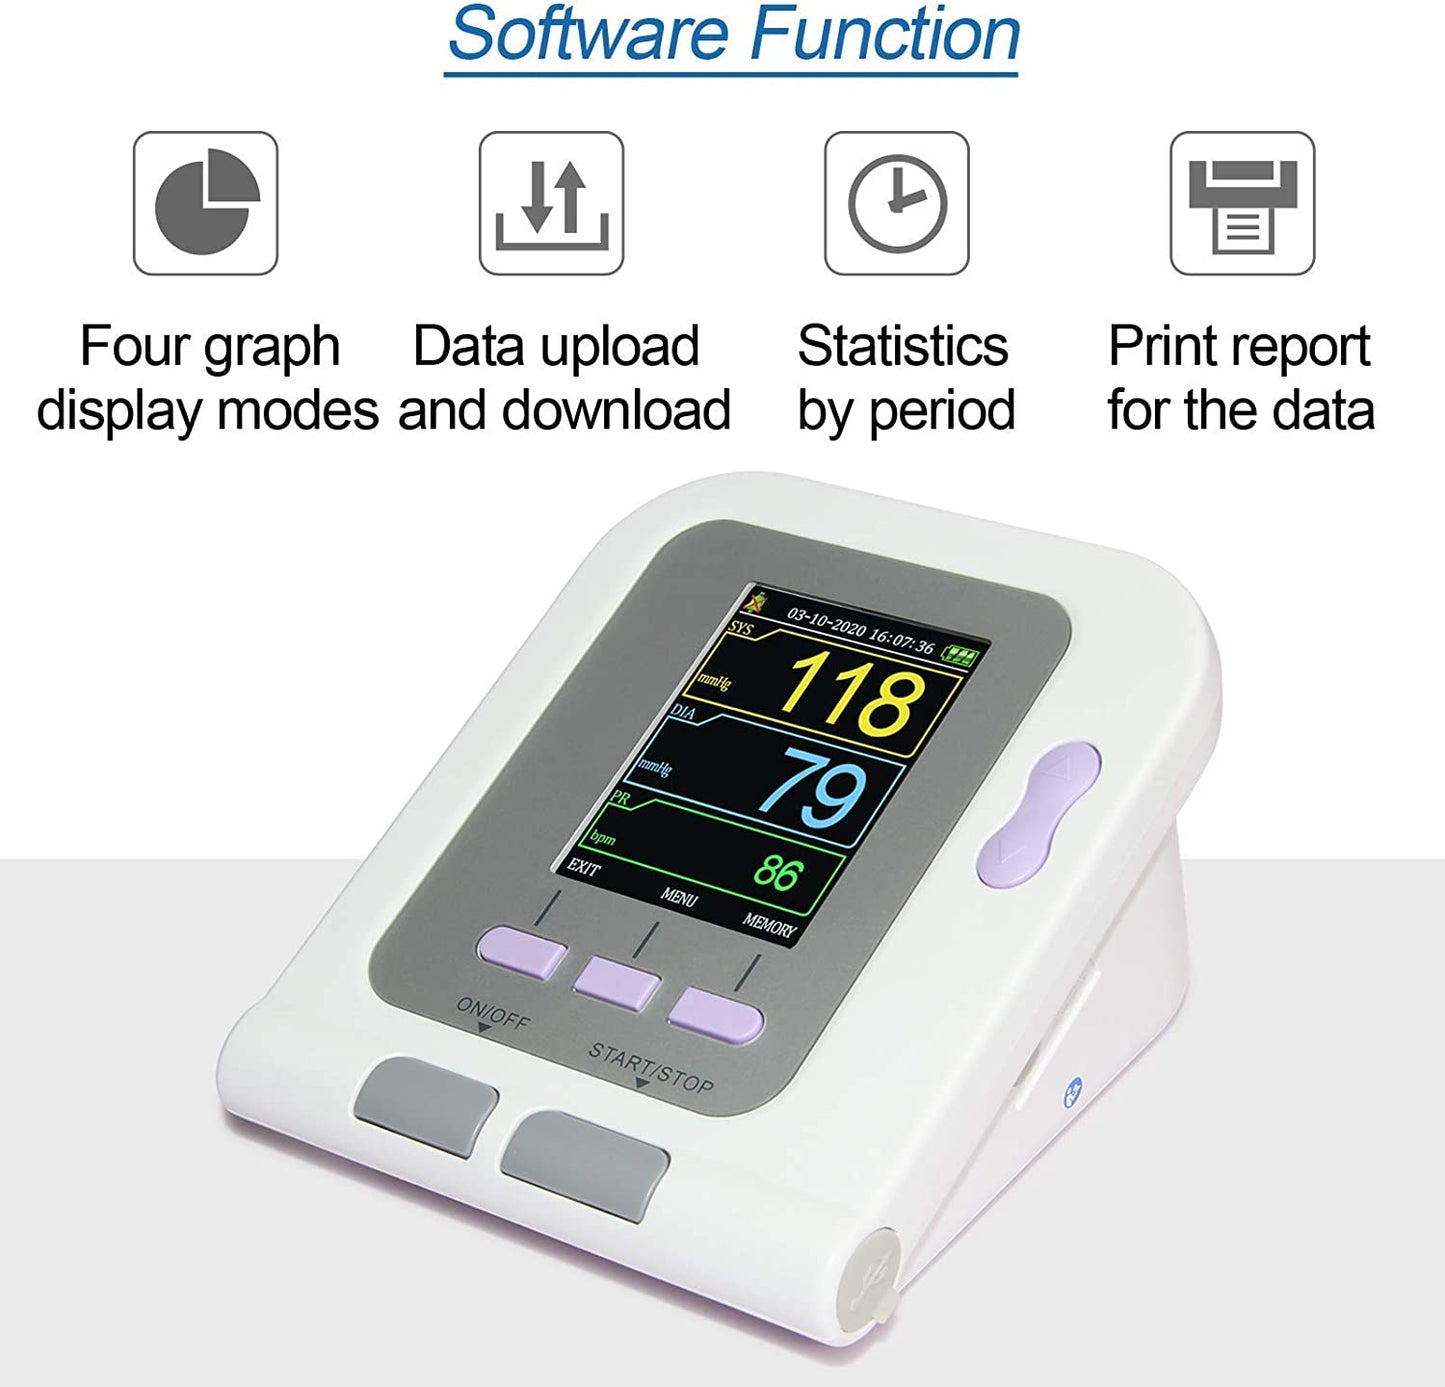 CONTEC Digital Blood Pressure Monitor CONTEC08A+Neonatal/Pediatrics/Ch